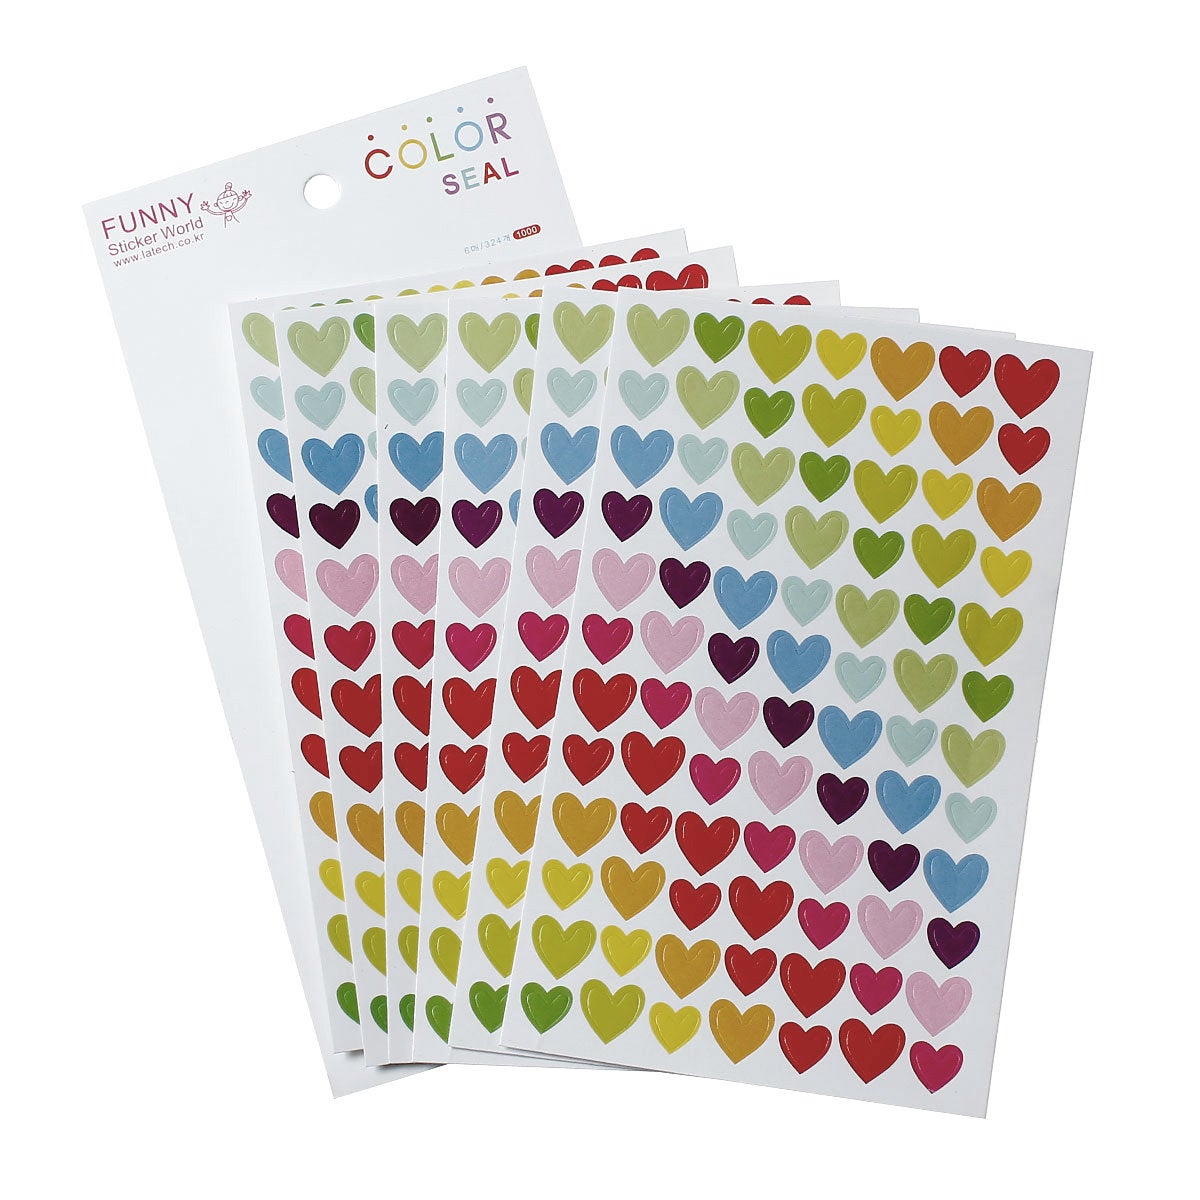 Heart sticker set - 6 sheets